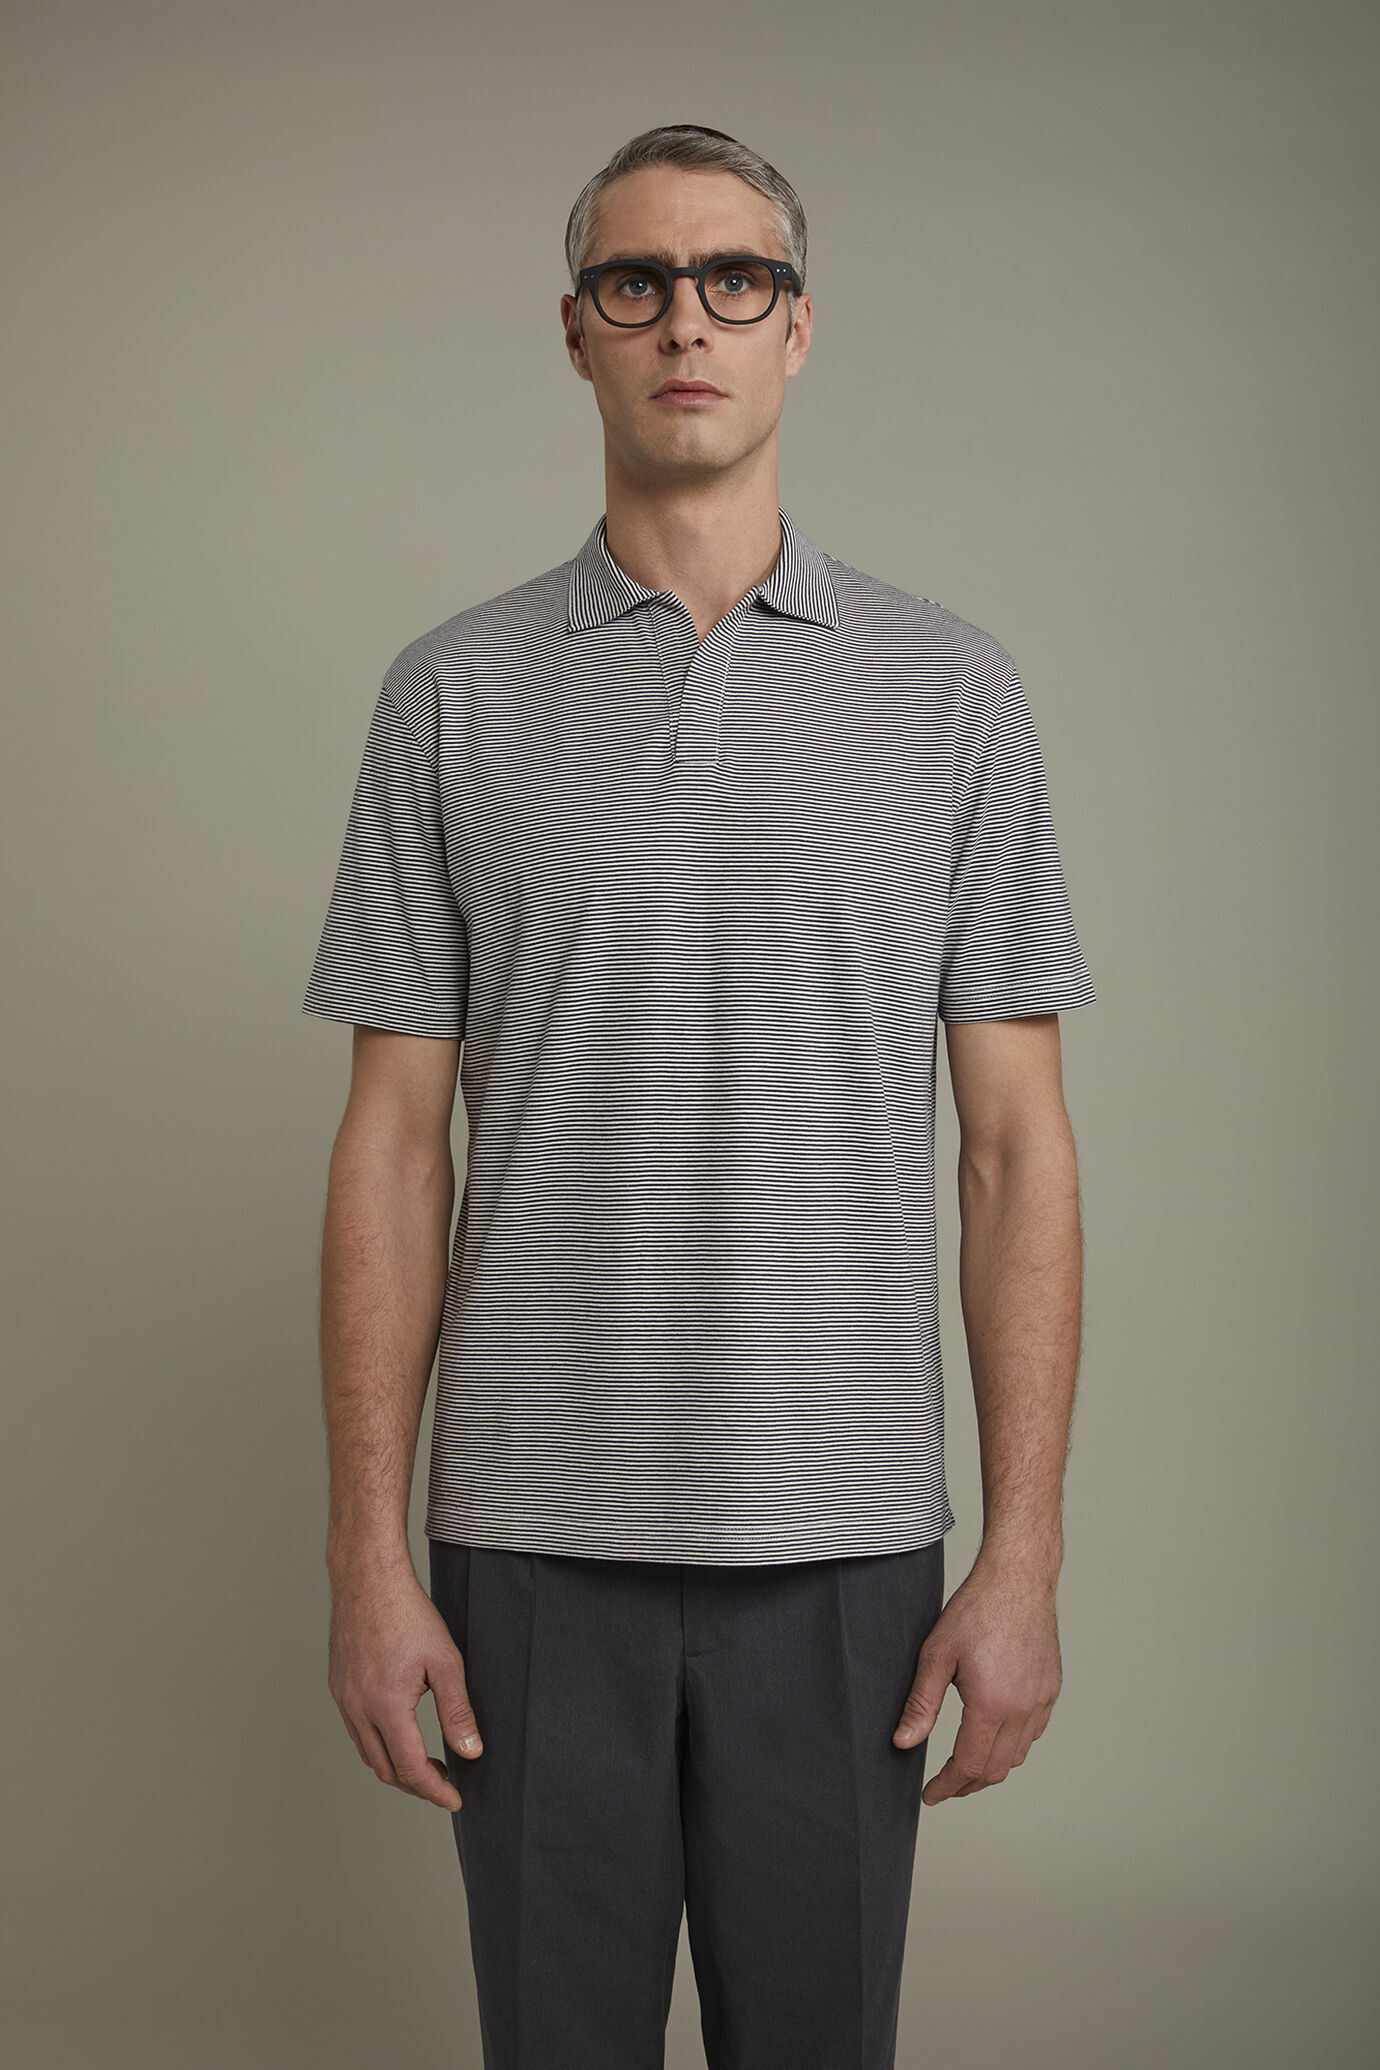 Kurzärmeliges Herren-Poloshirt mit knopflosem Derby-Kragen aus 100 % Baumwolle mit feinen Streifen in normaler Passform